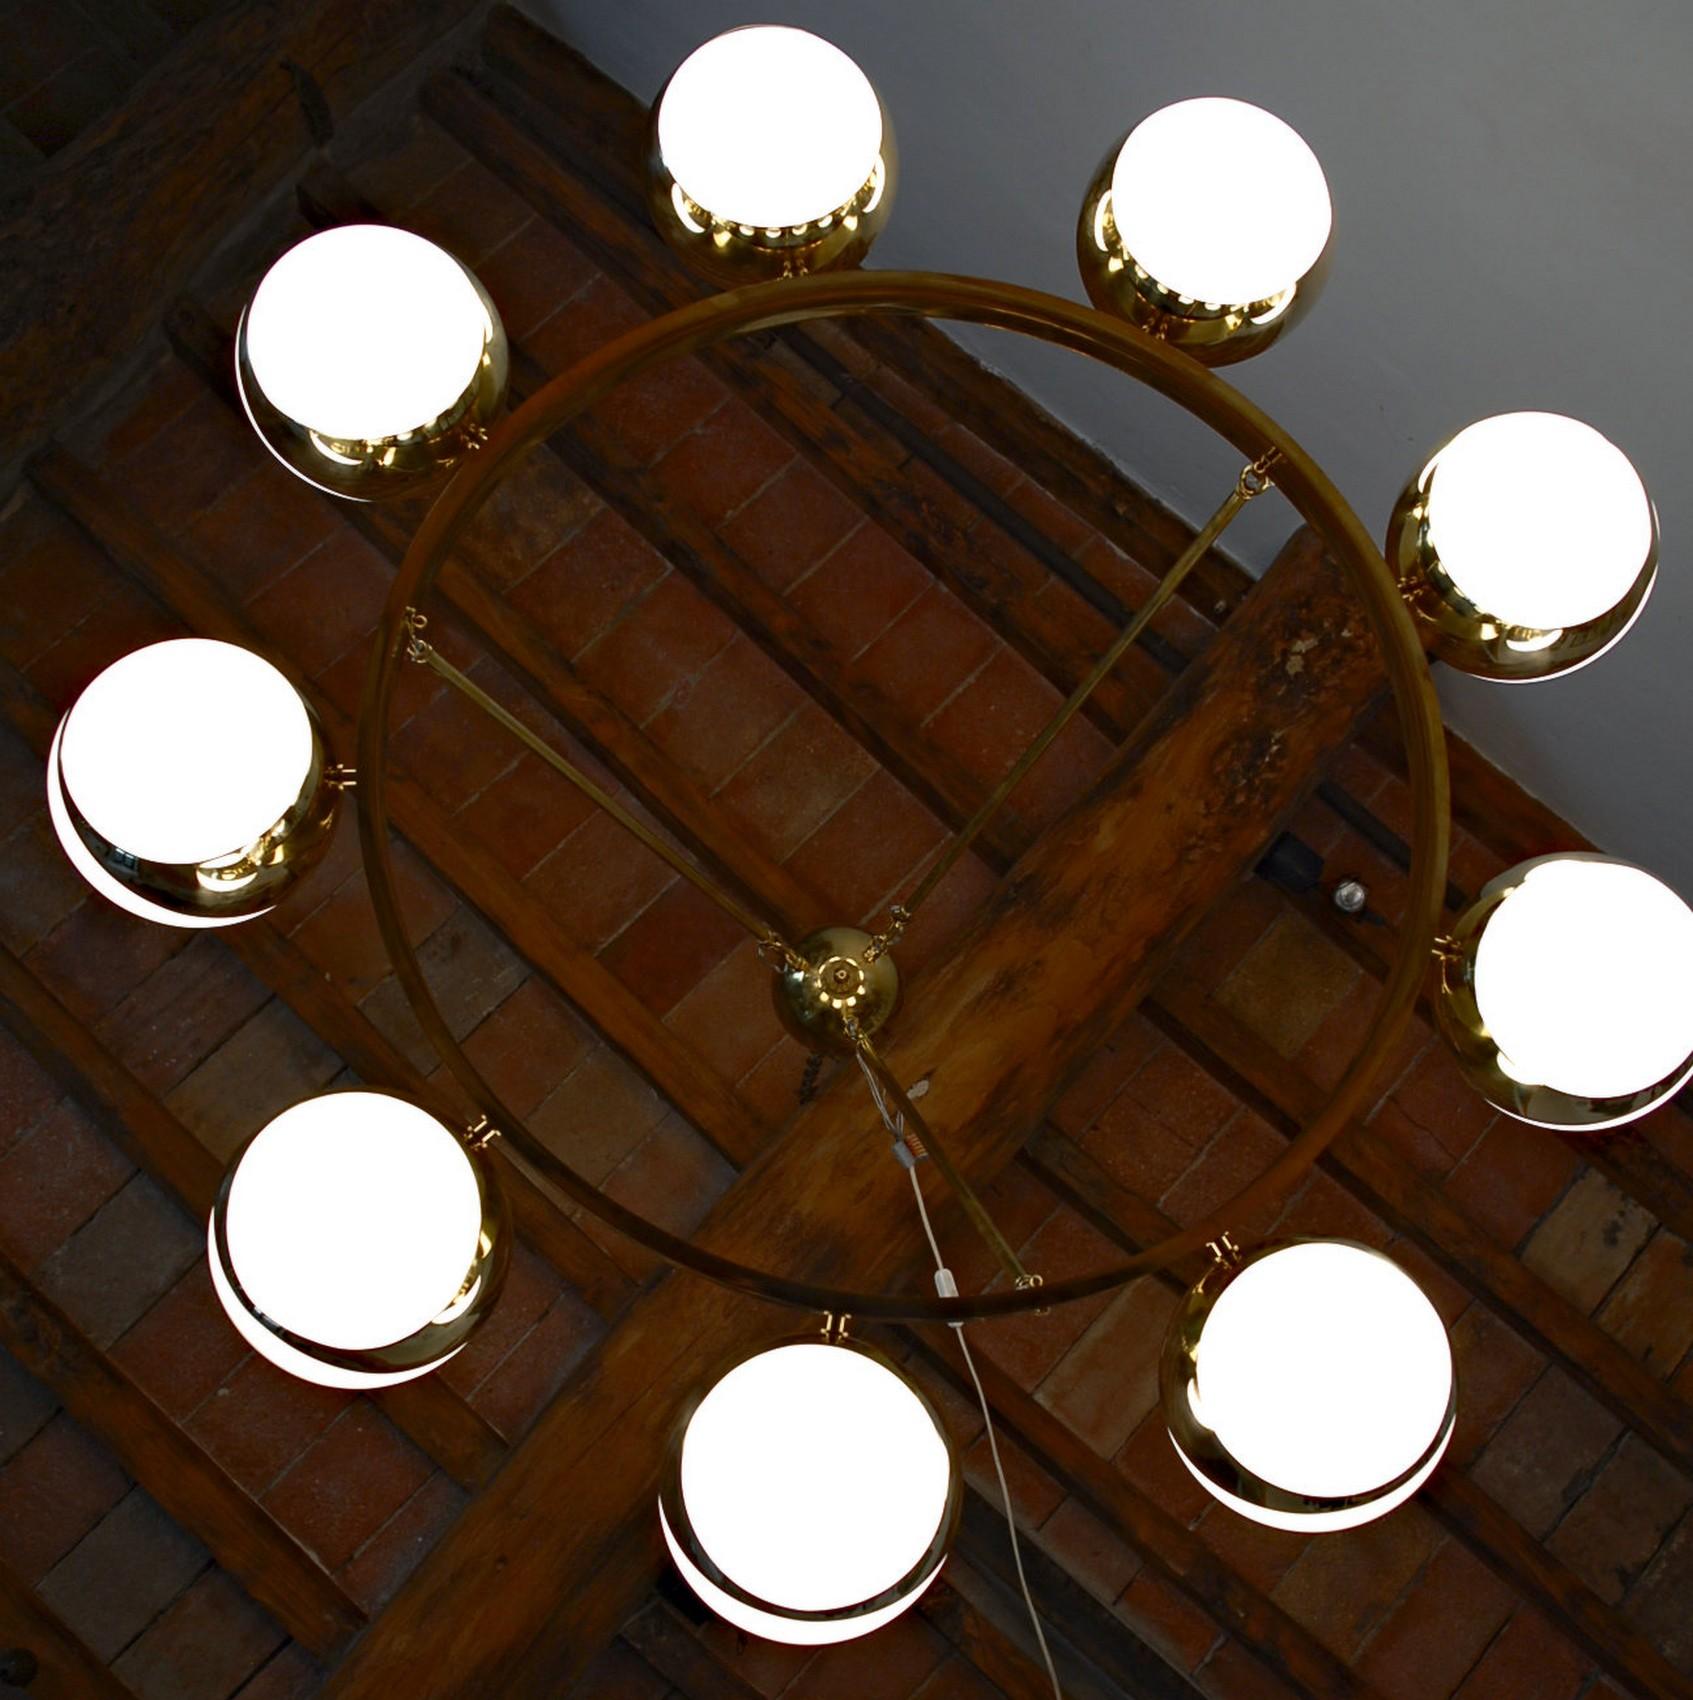 Brass and lattimo glass chandelier, 9 spheres Stilnovo Designed for light output 4